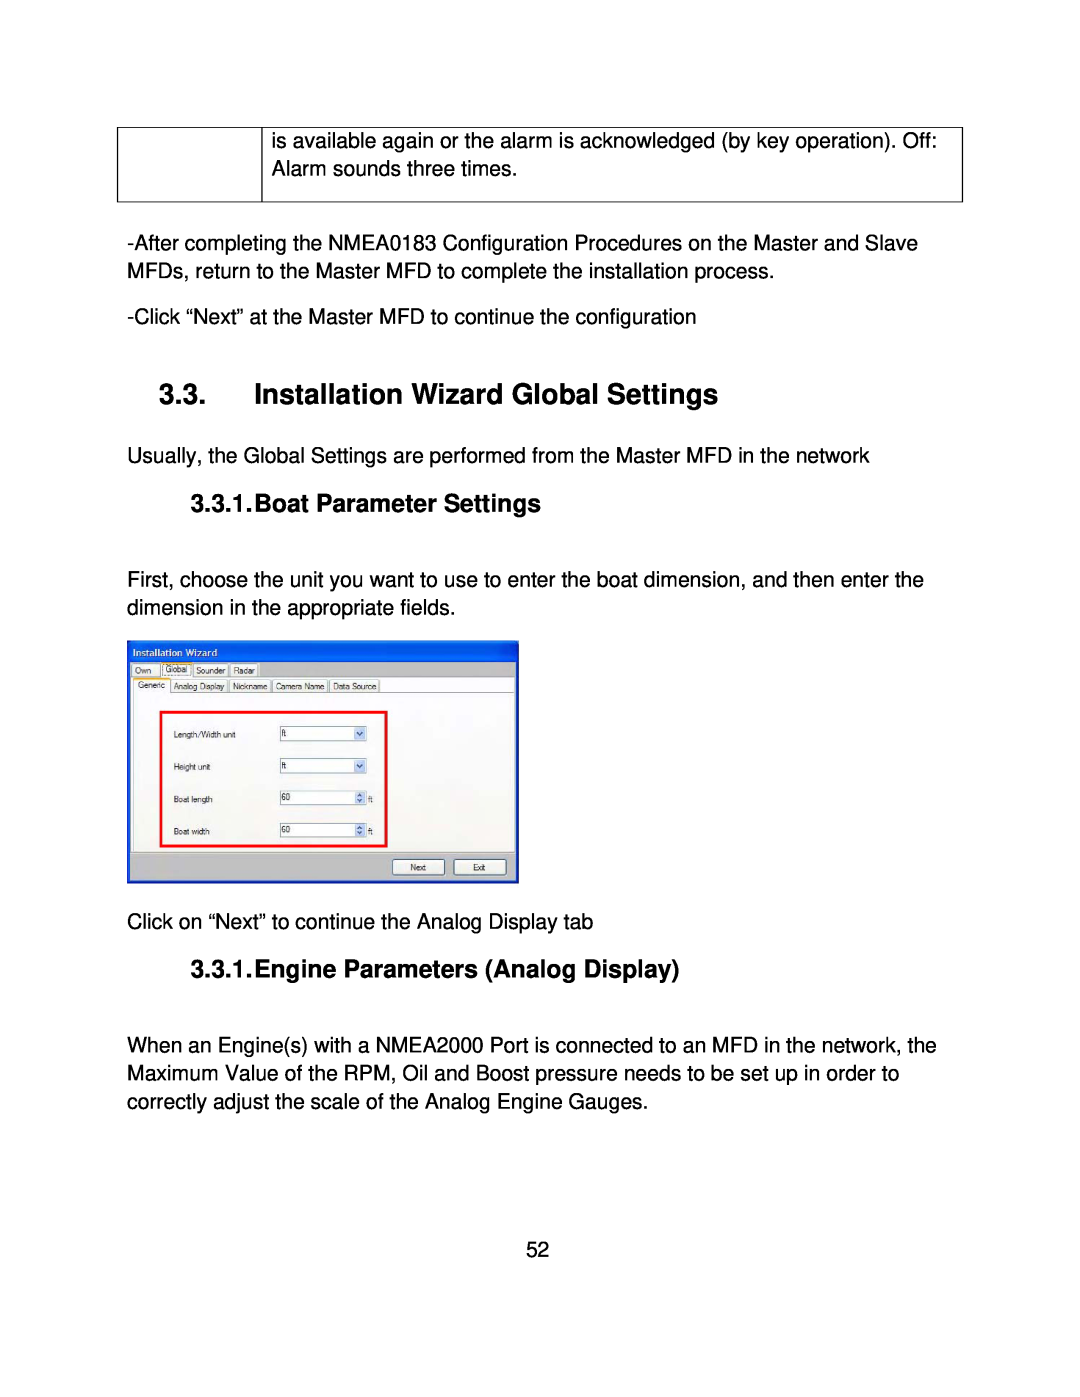 Furuno MFD8/12/BB manual Installation Wizard Global Settings, Boat Parameter Settings, Engine Parameters Analog Display 